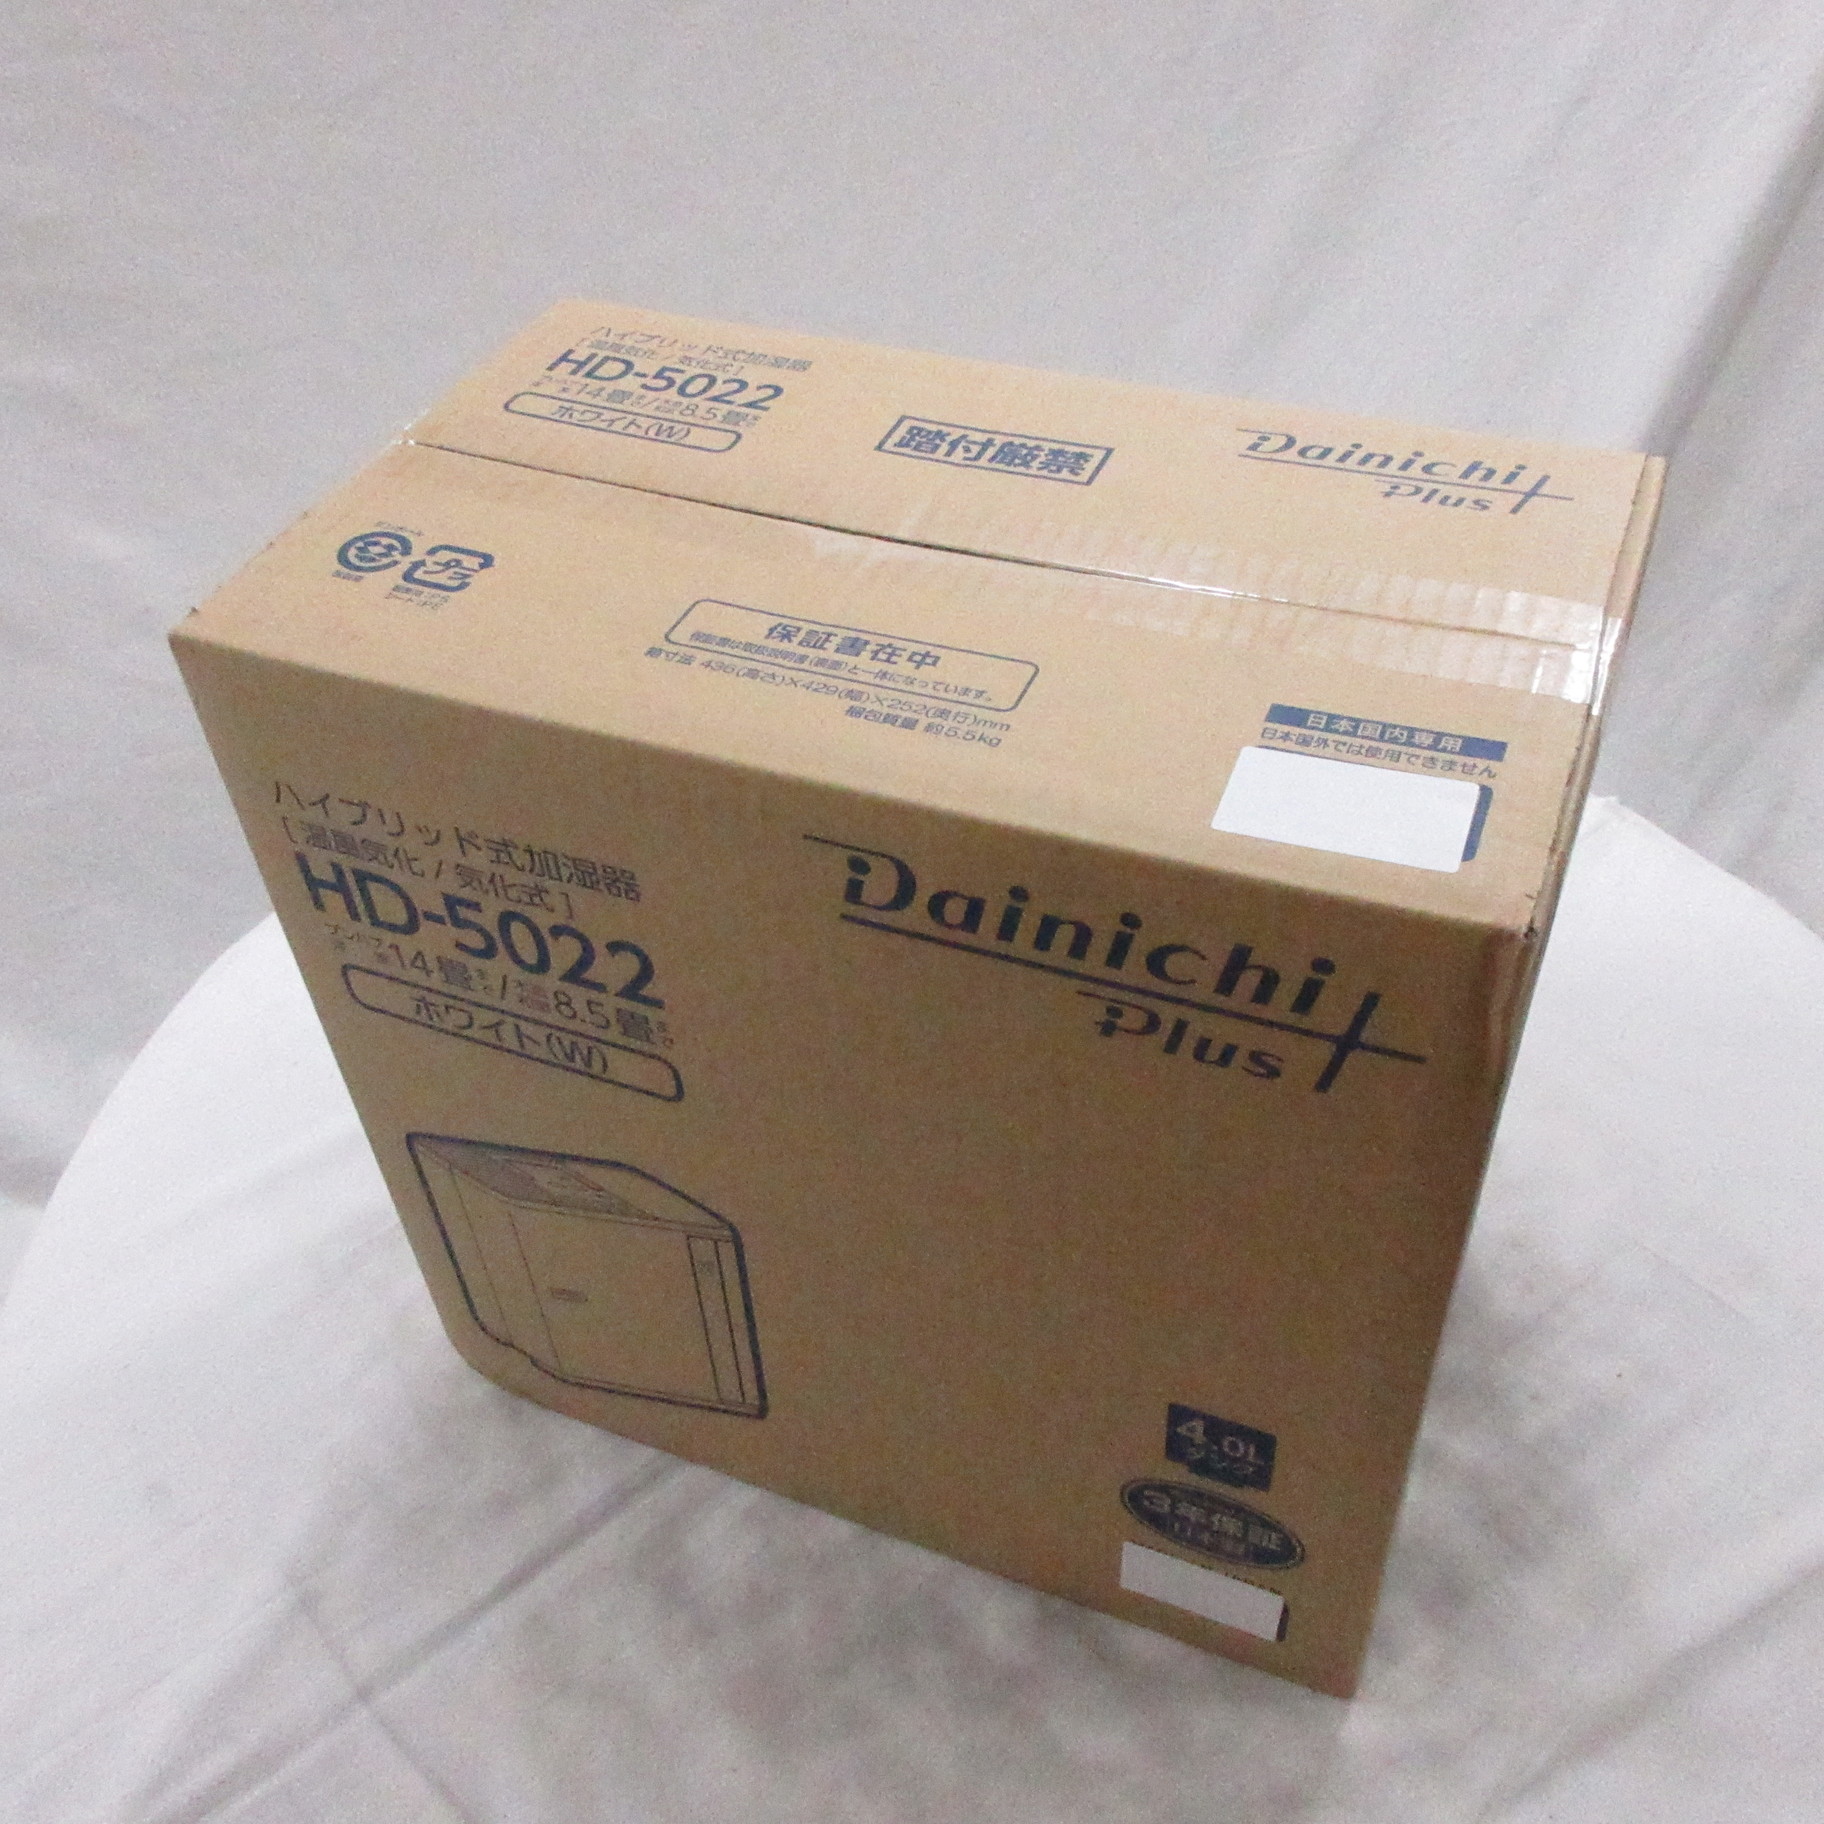 ハイブリッド式加湿器 Dainichi Plus ホワイト HD-5022-W ［ハイブリッド（加熱＋気化）式］ 〔箱破損品〕